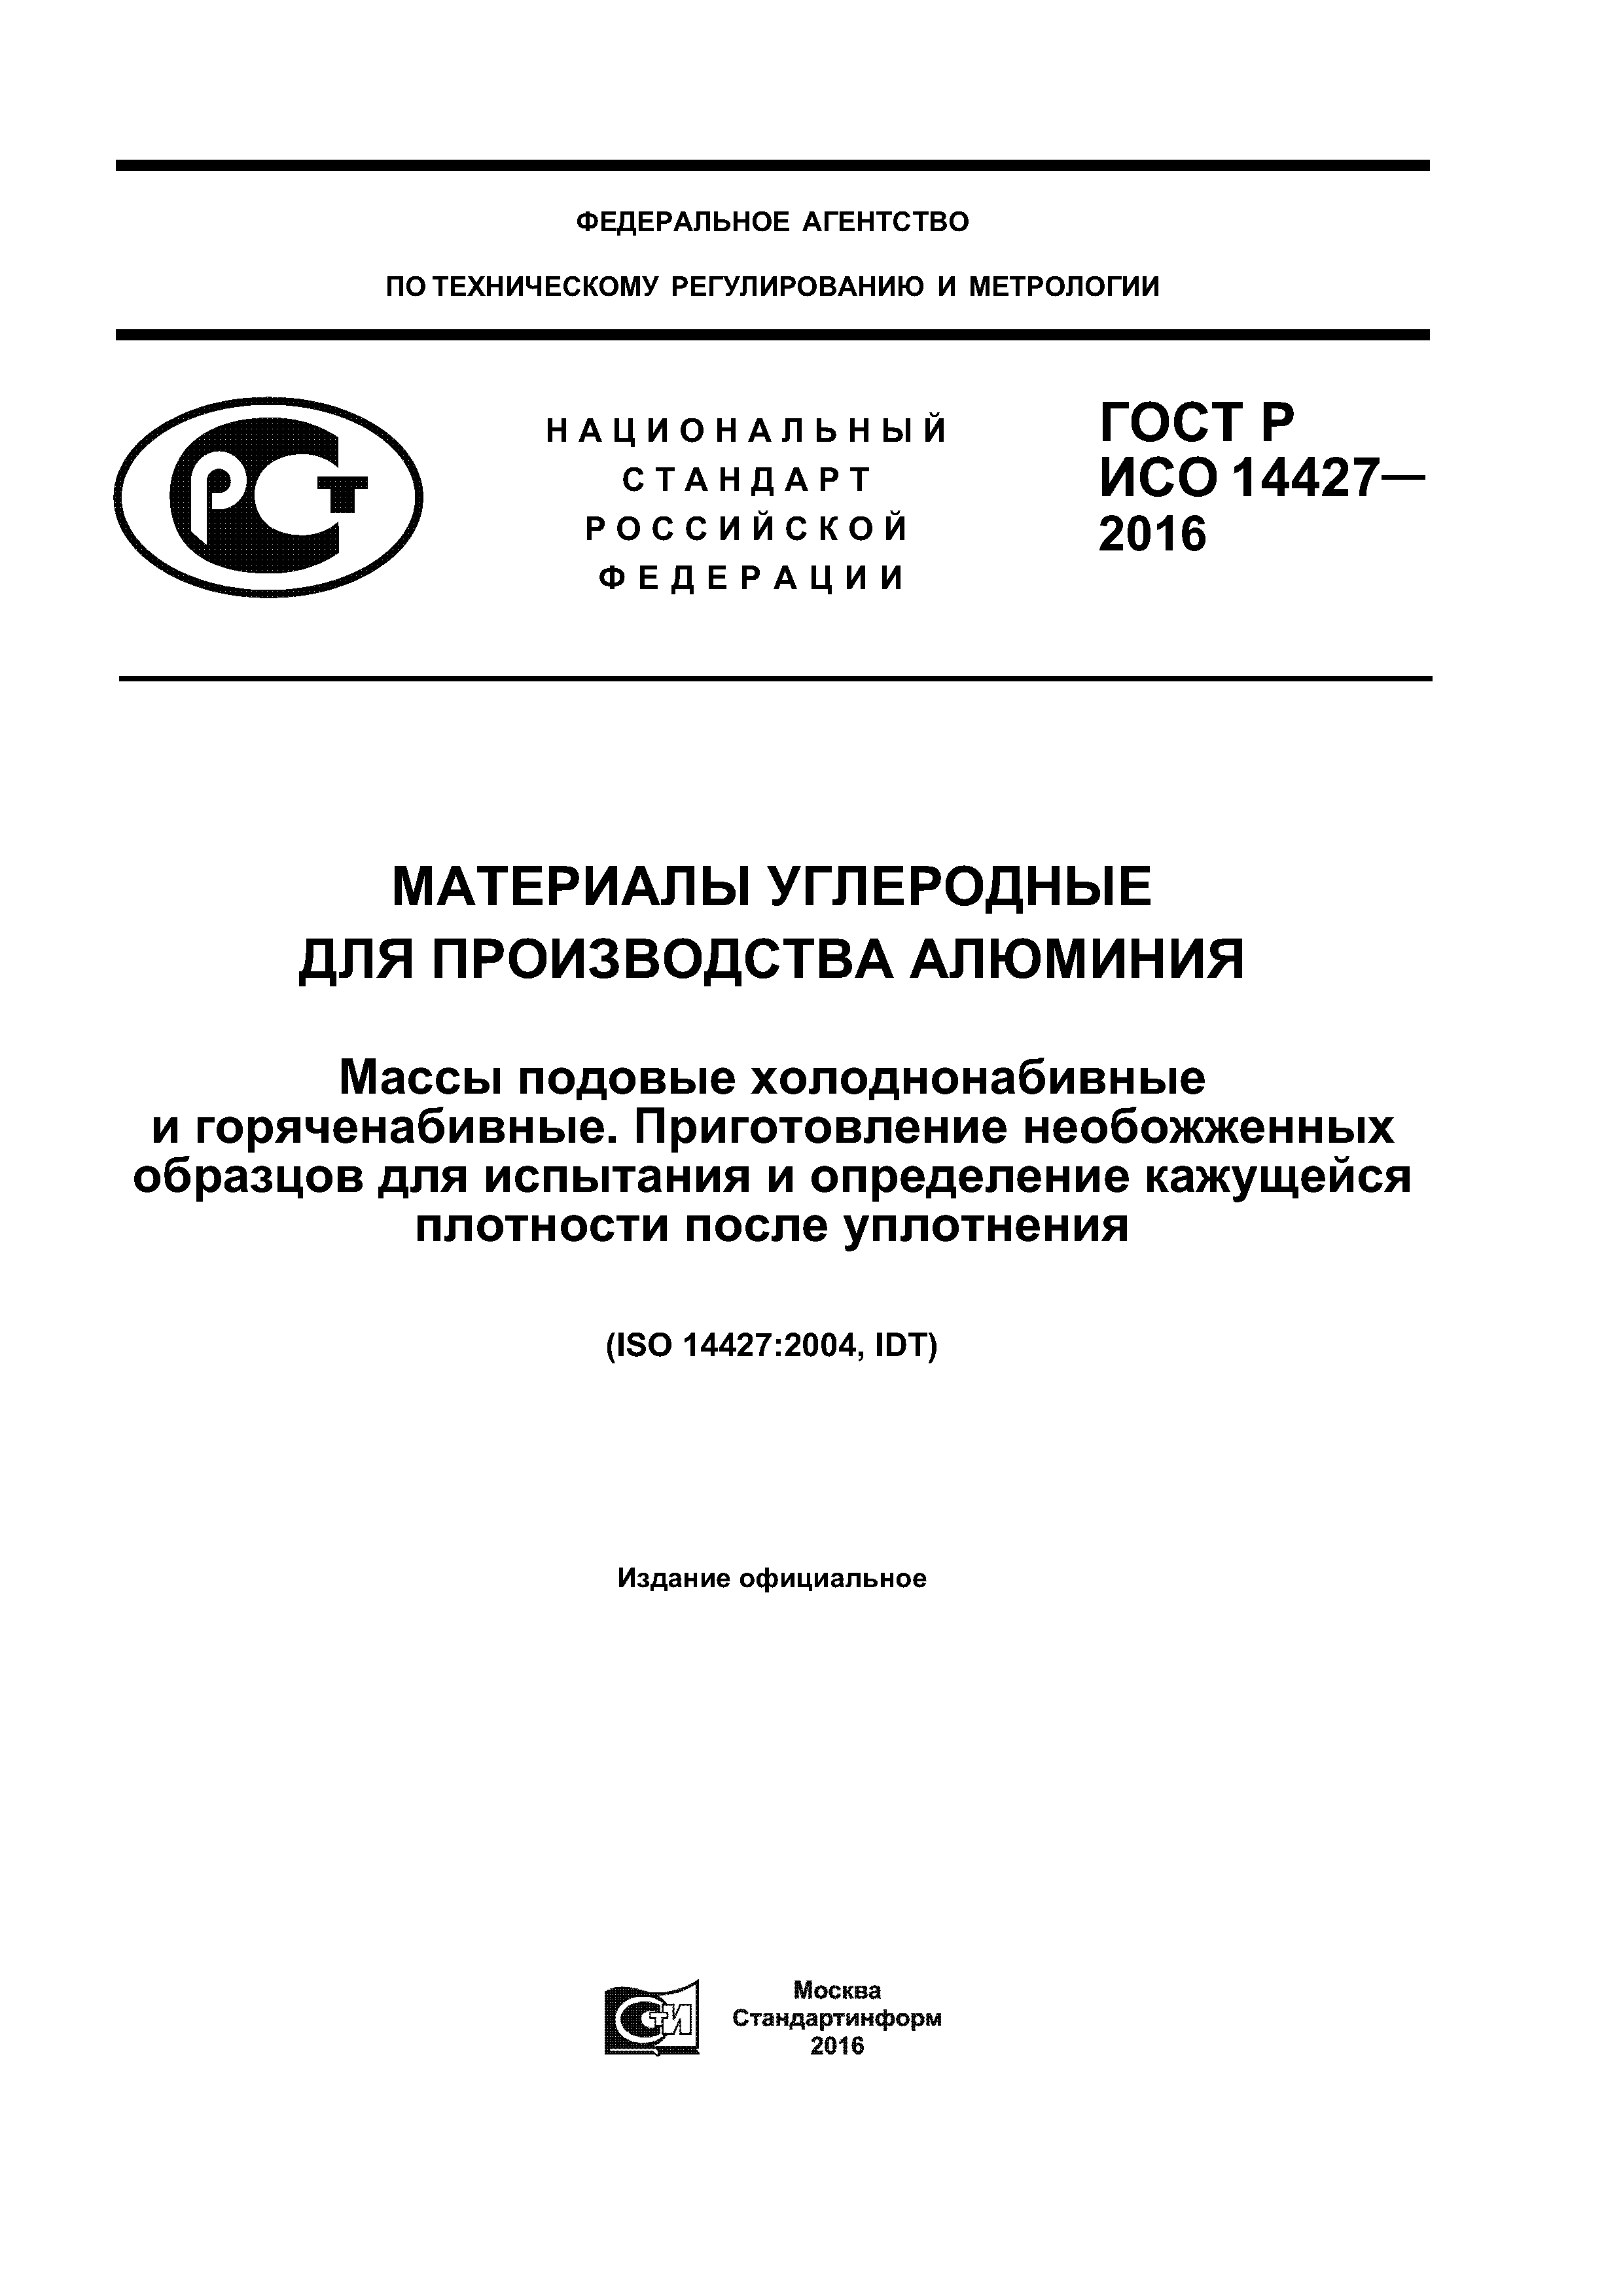 ГОСТ Р ИСО 14427-2016